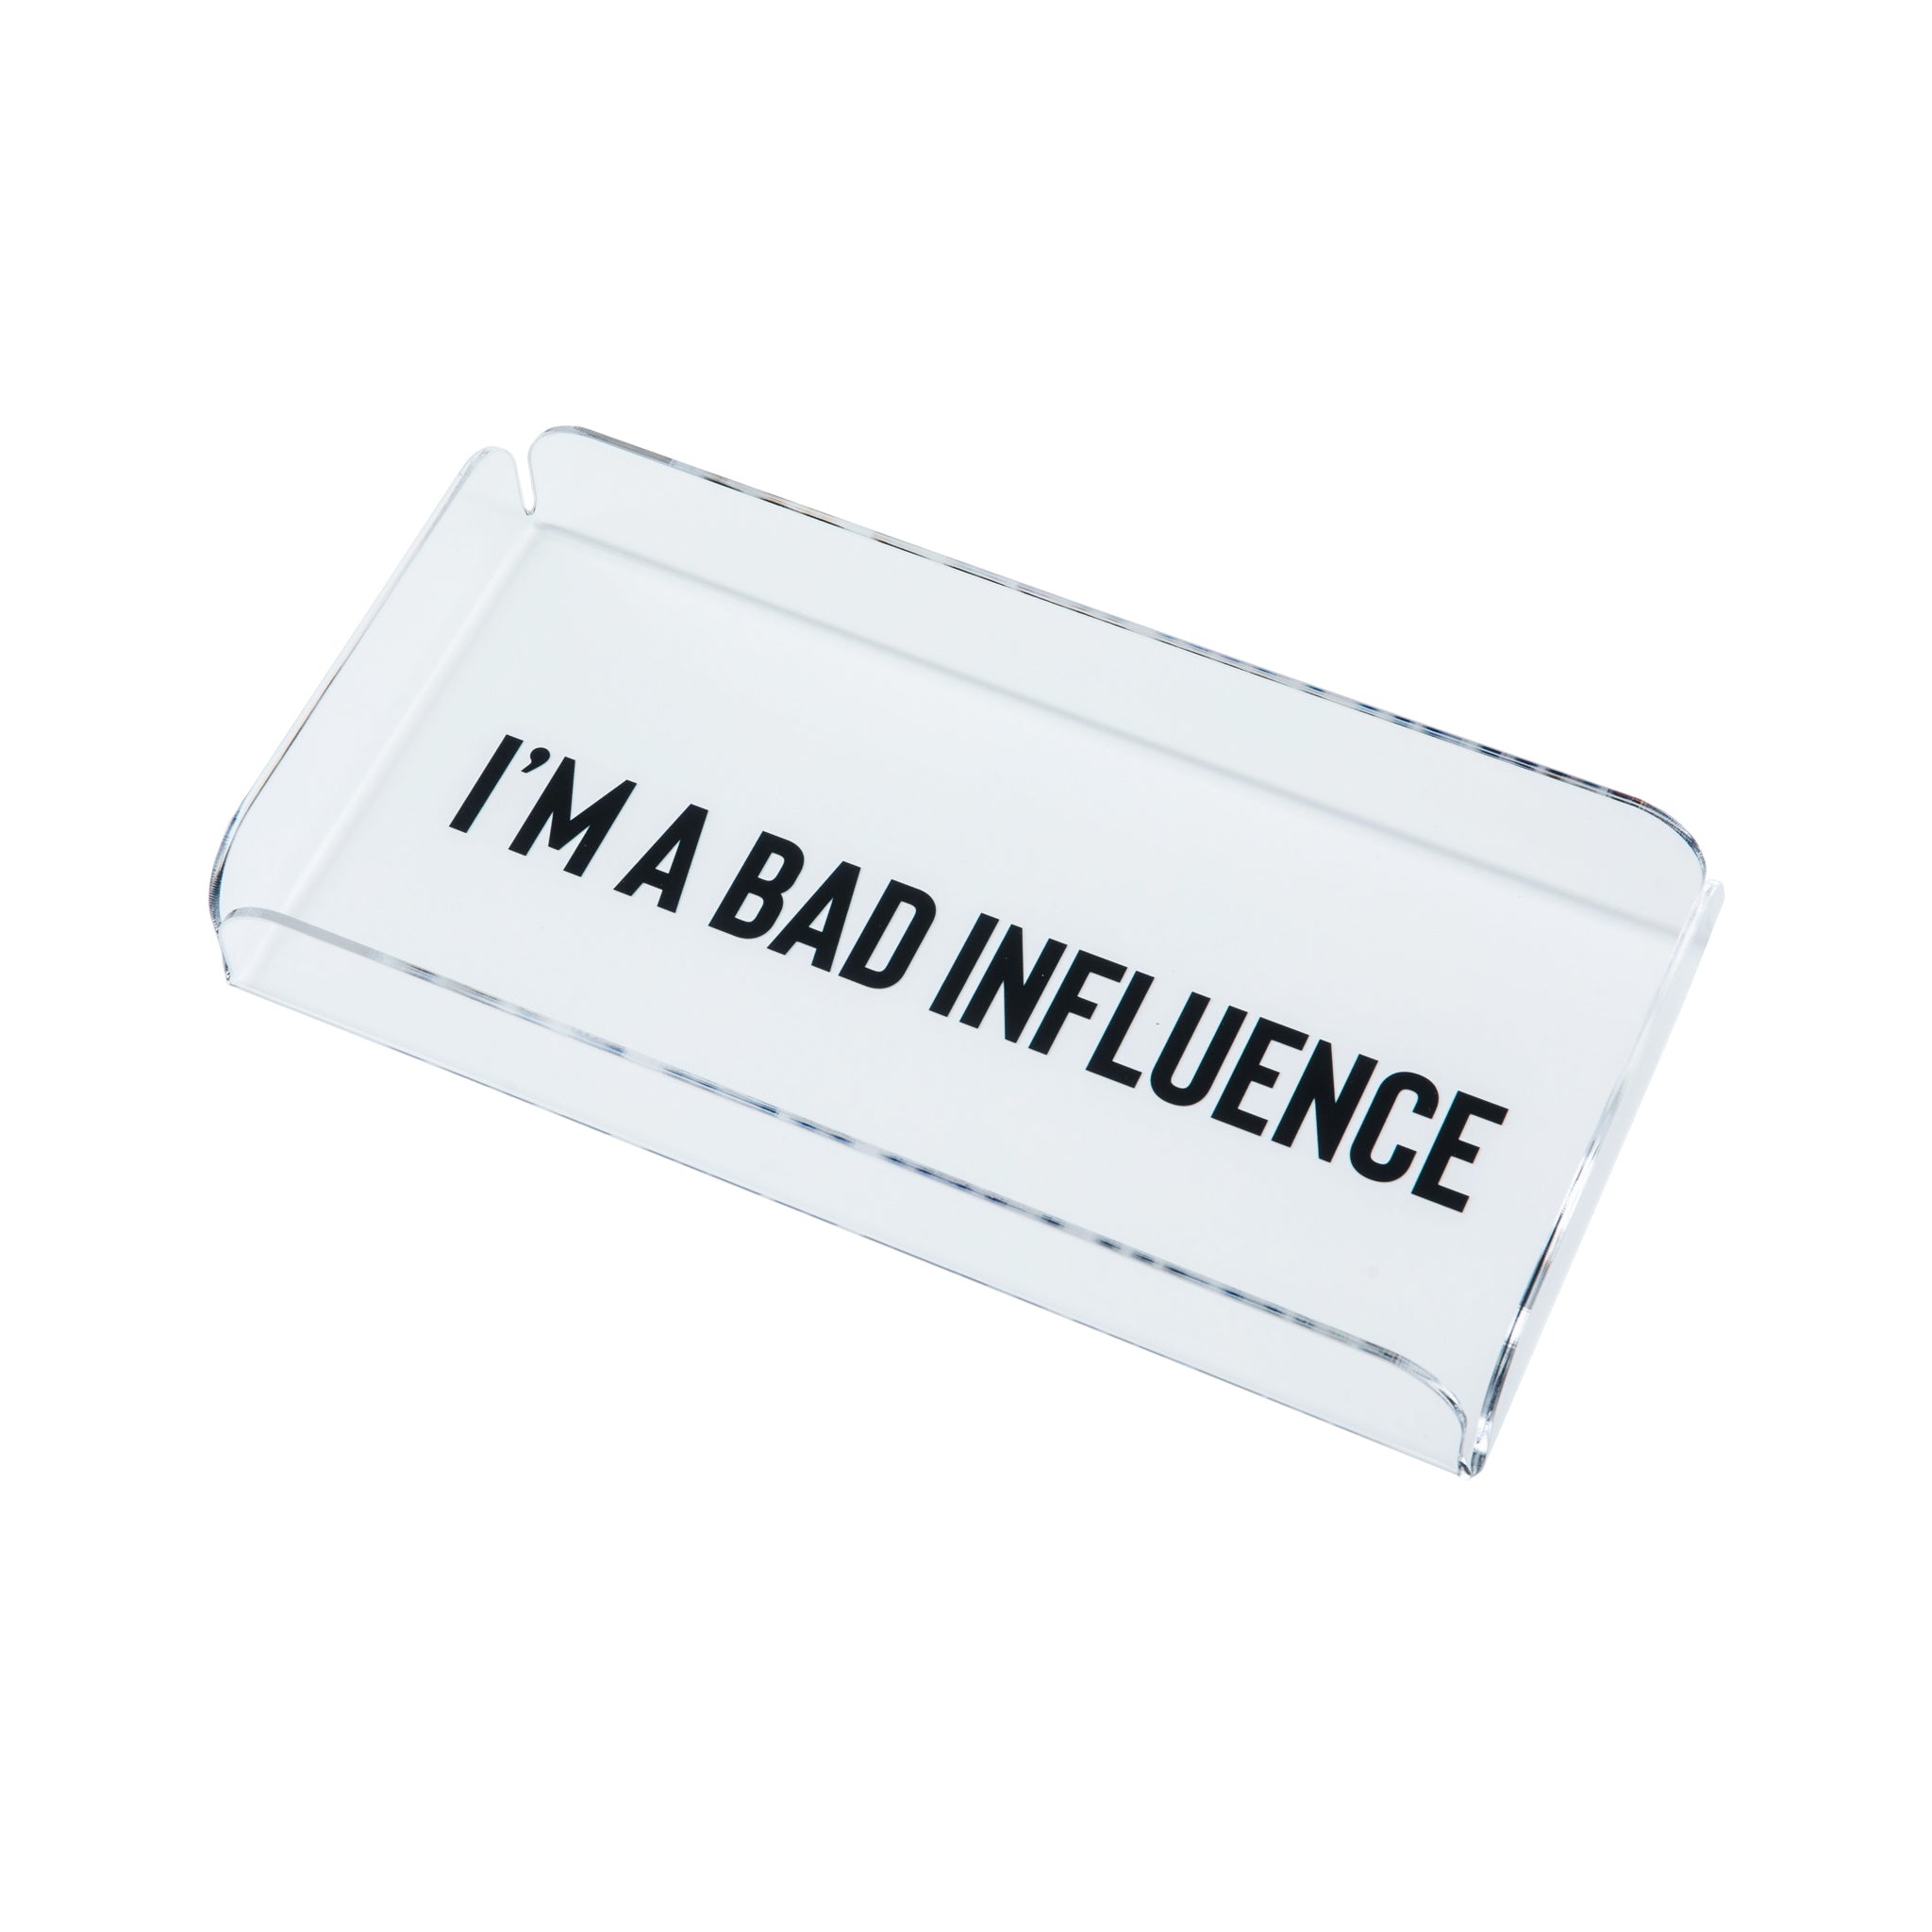 ZOOM Tray | I am a bad influence